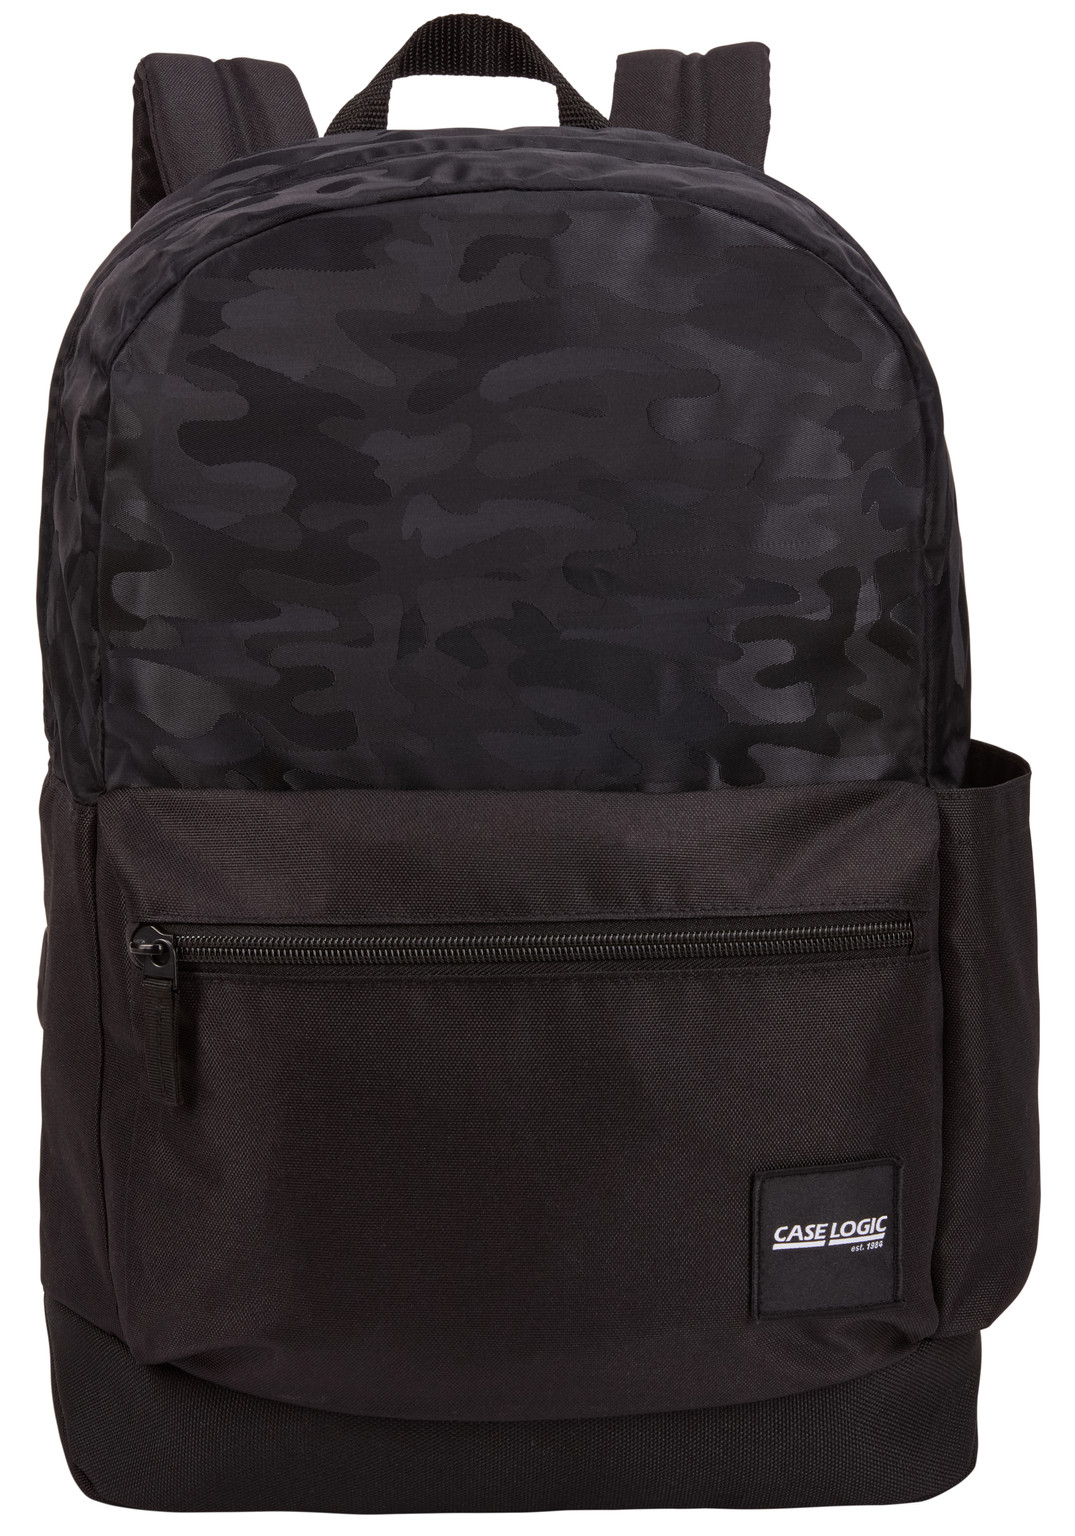  Case Logic Founder Backpack Polyester, 26L, Black Camo